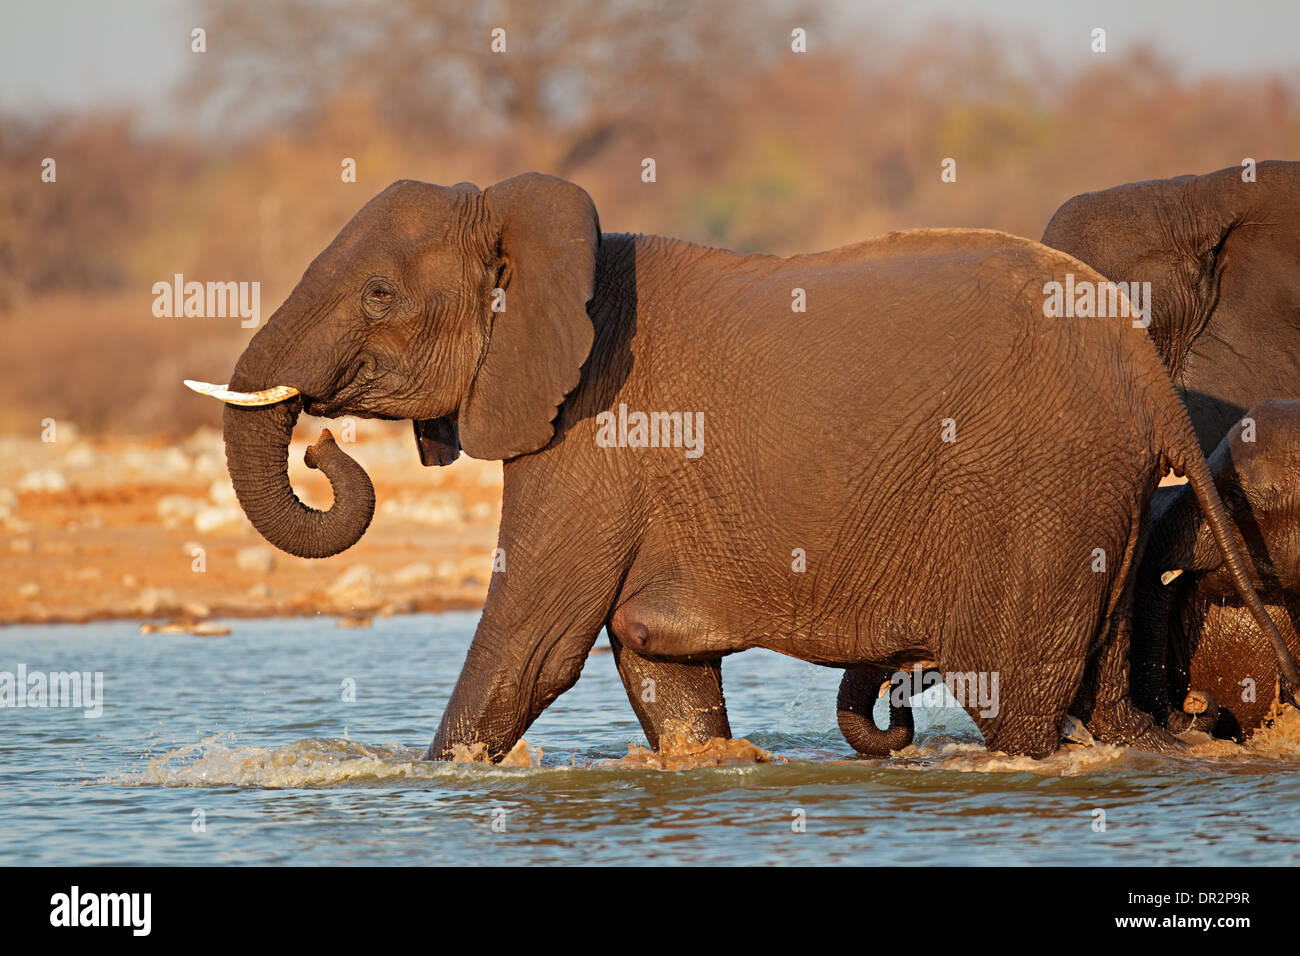 L'éléphant africain (Loxodonta africana) marcher dans l'eau, Etosha National Park, Namibie Banque D'Images